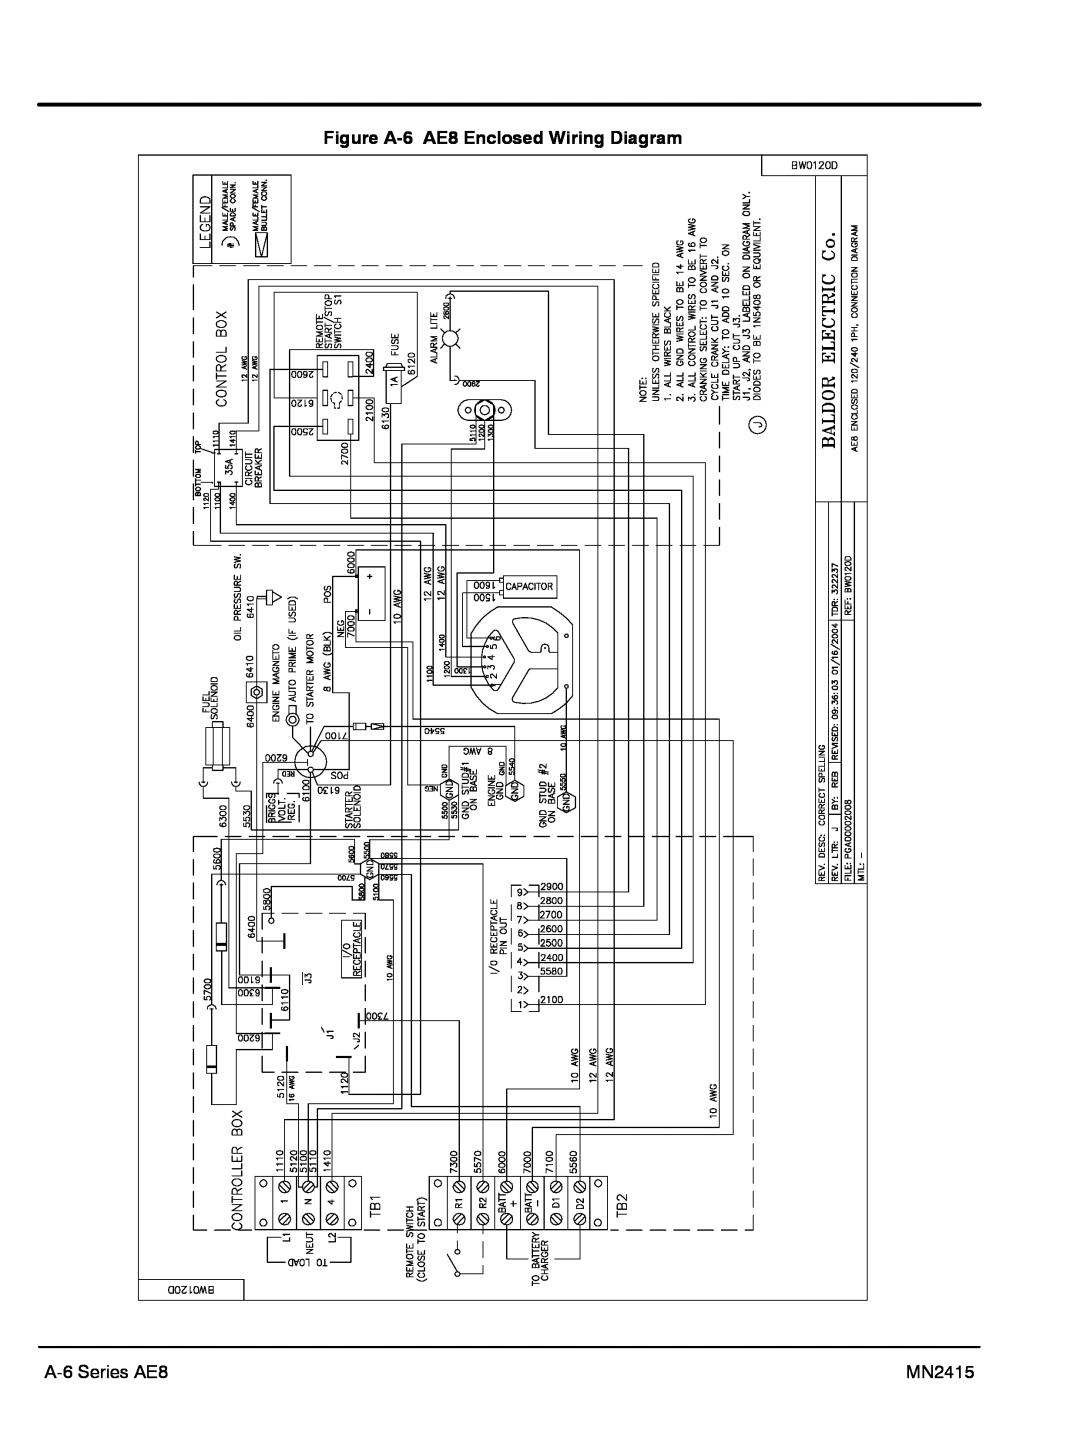 Baldor AE25, AE11, AE10 manual Figure A-6 AE8 Enclosed Wiring Diagram, A-6 Series AE8, MN2415 